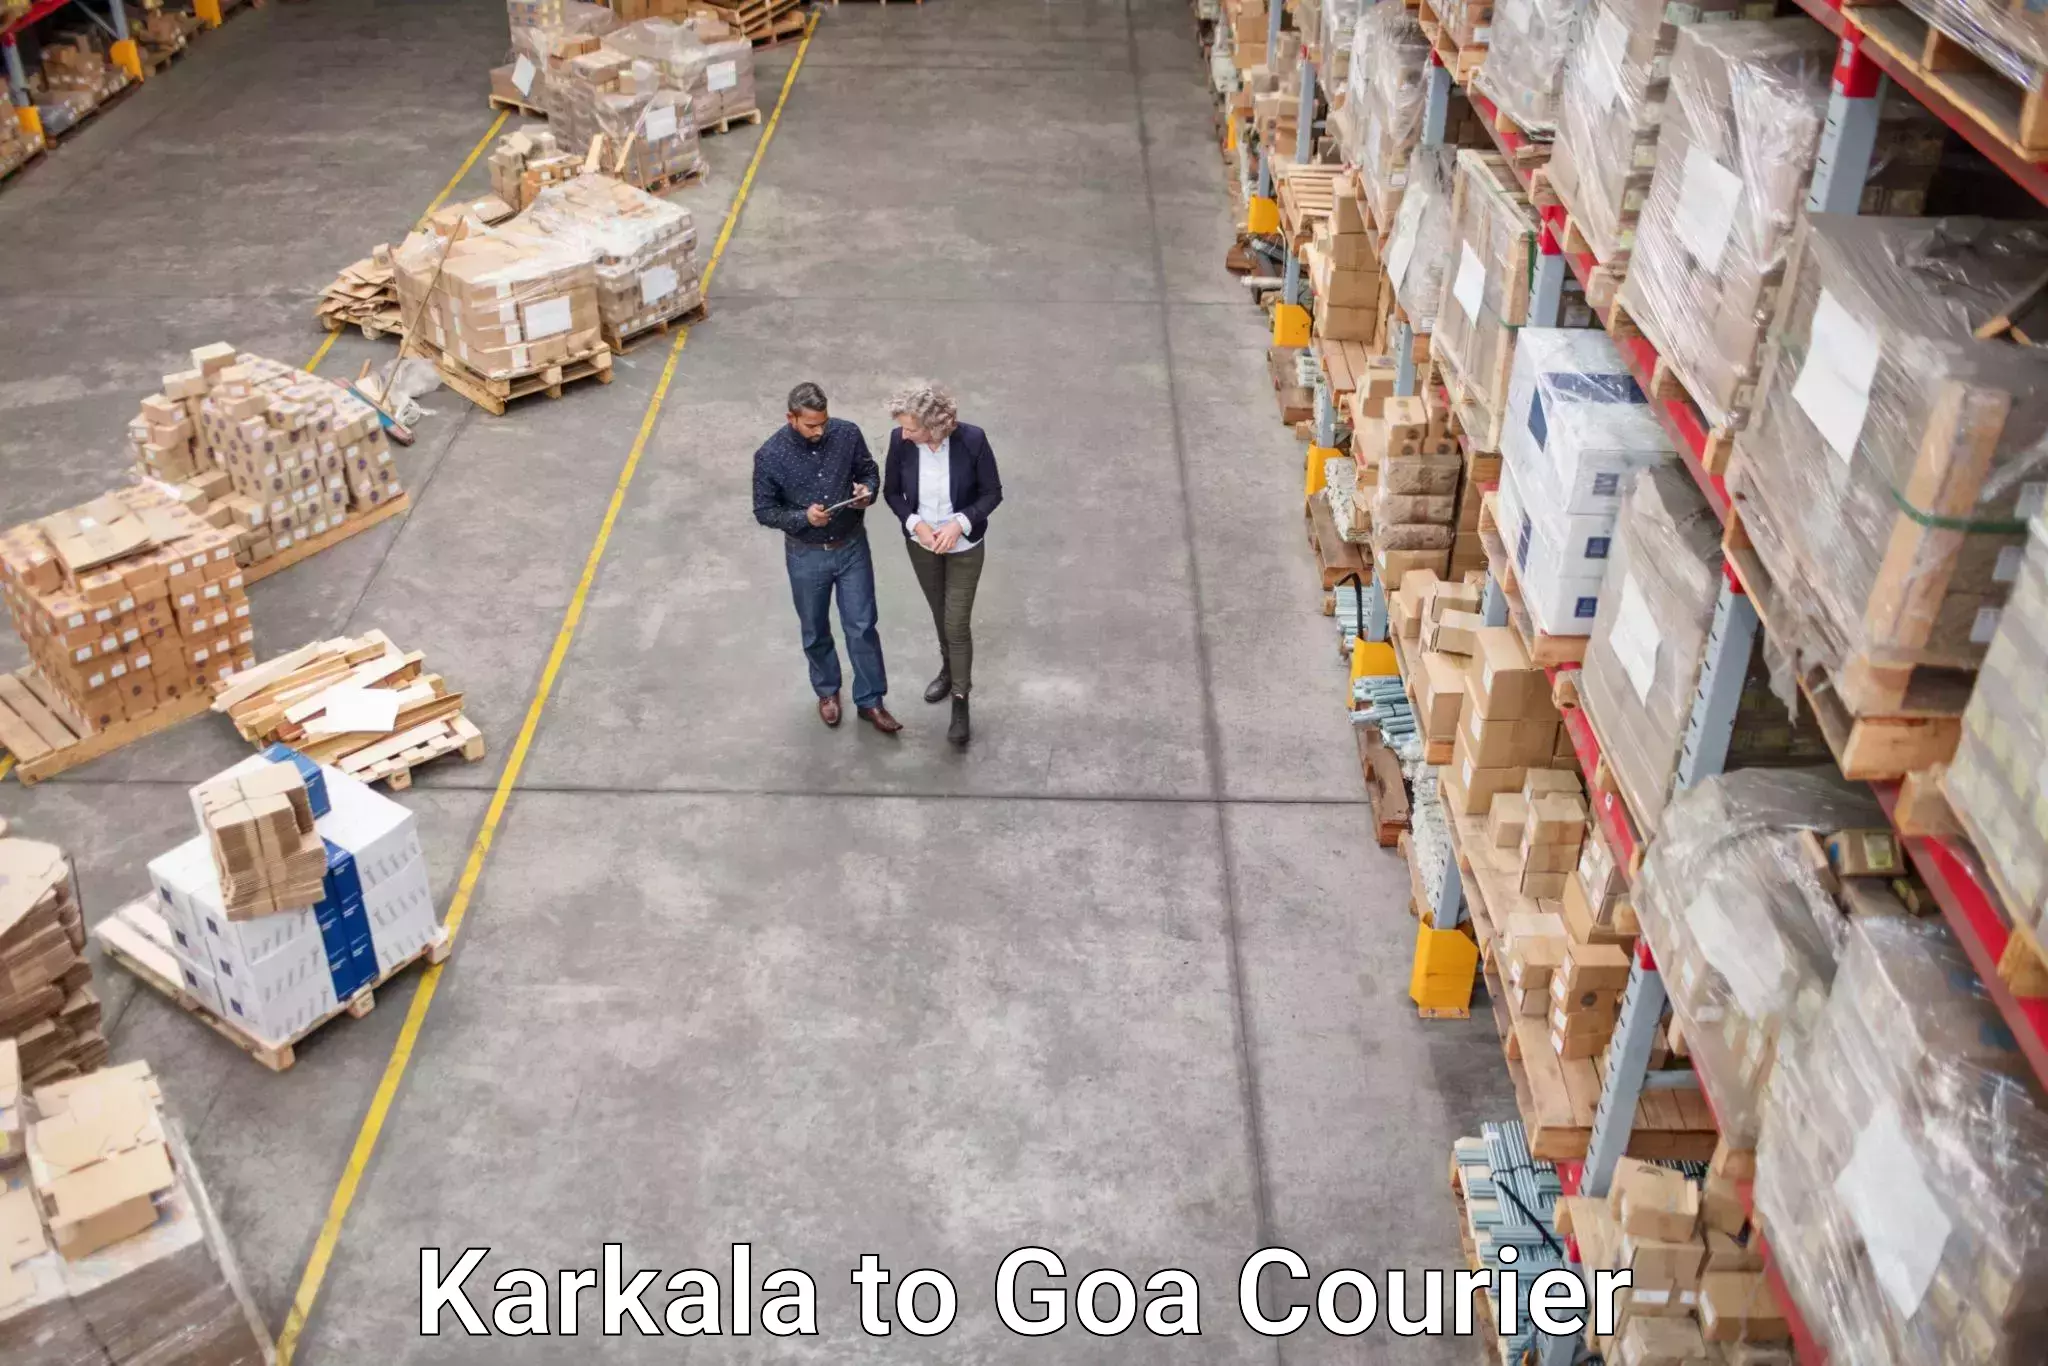 Global courier networks Karkala to Panaji